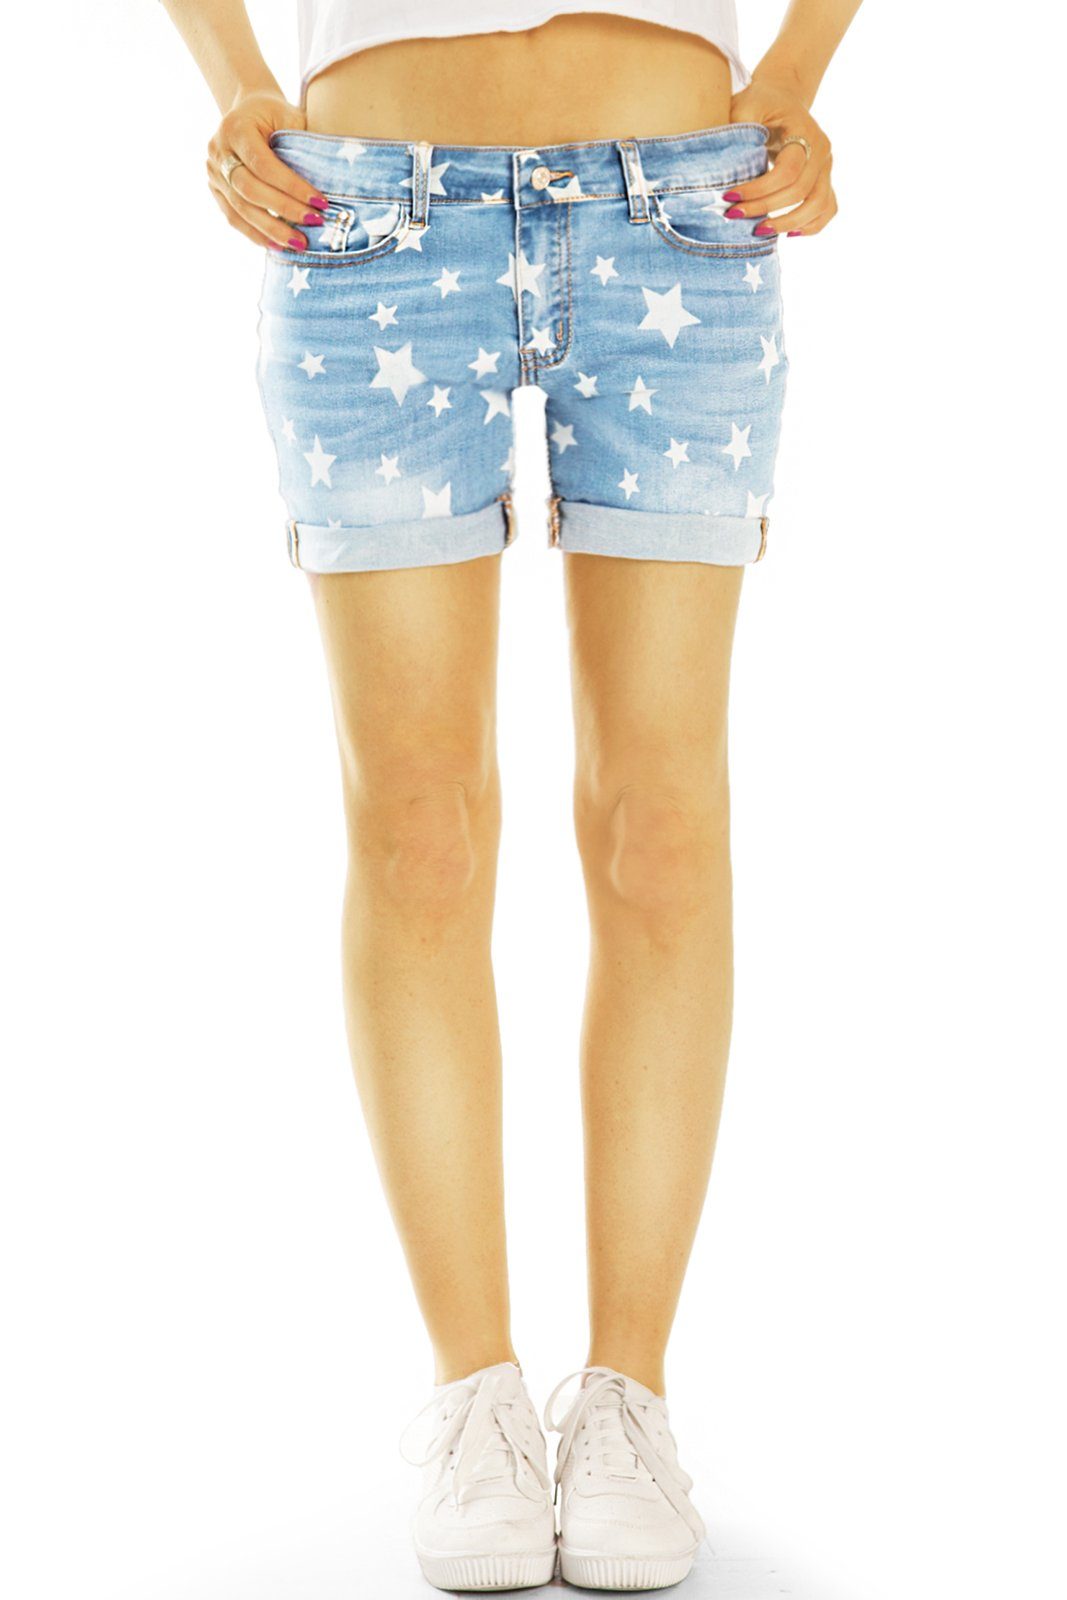 Hosen be j60k Sternenprint - Stretch-Anteil, Shorts mit Jeans 5-Pocket-Style - kurze Damen Hotpants styled Hotpants mit